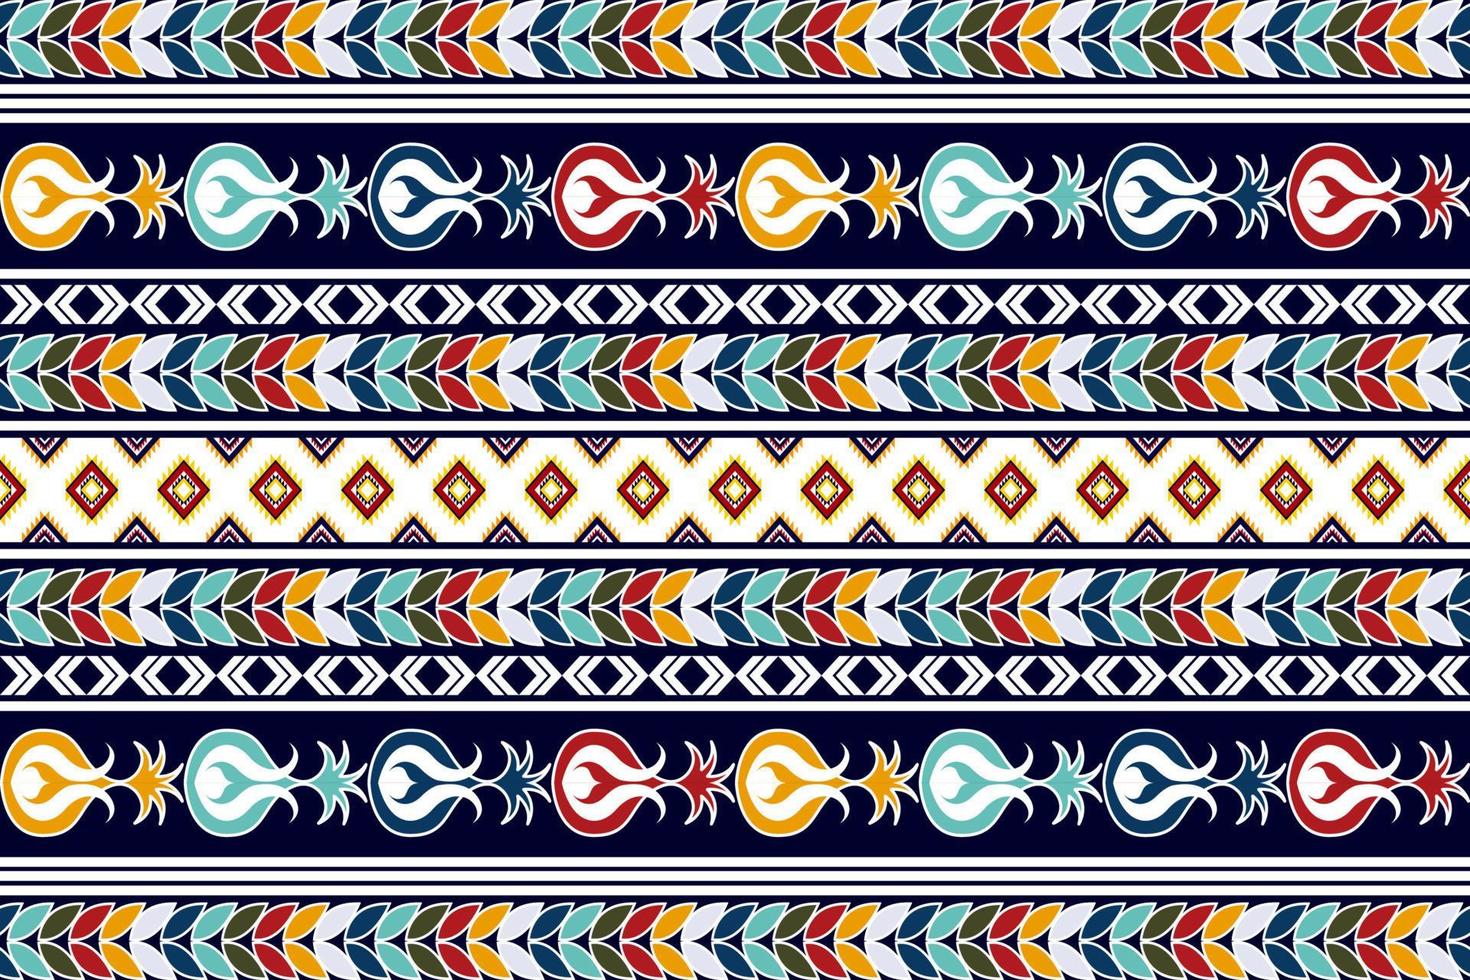 ikat etnisch naadloos textielpatroonontwerp. Azteekse stof tapijt mandala ornamenten textiel decoraties behang. tribal boho inheemse Turkije traditionele borduurwerk vector achtergrond.